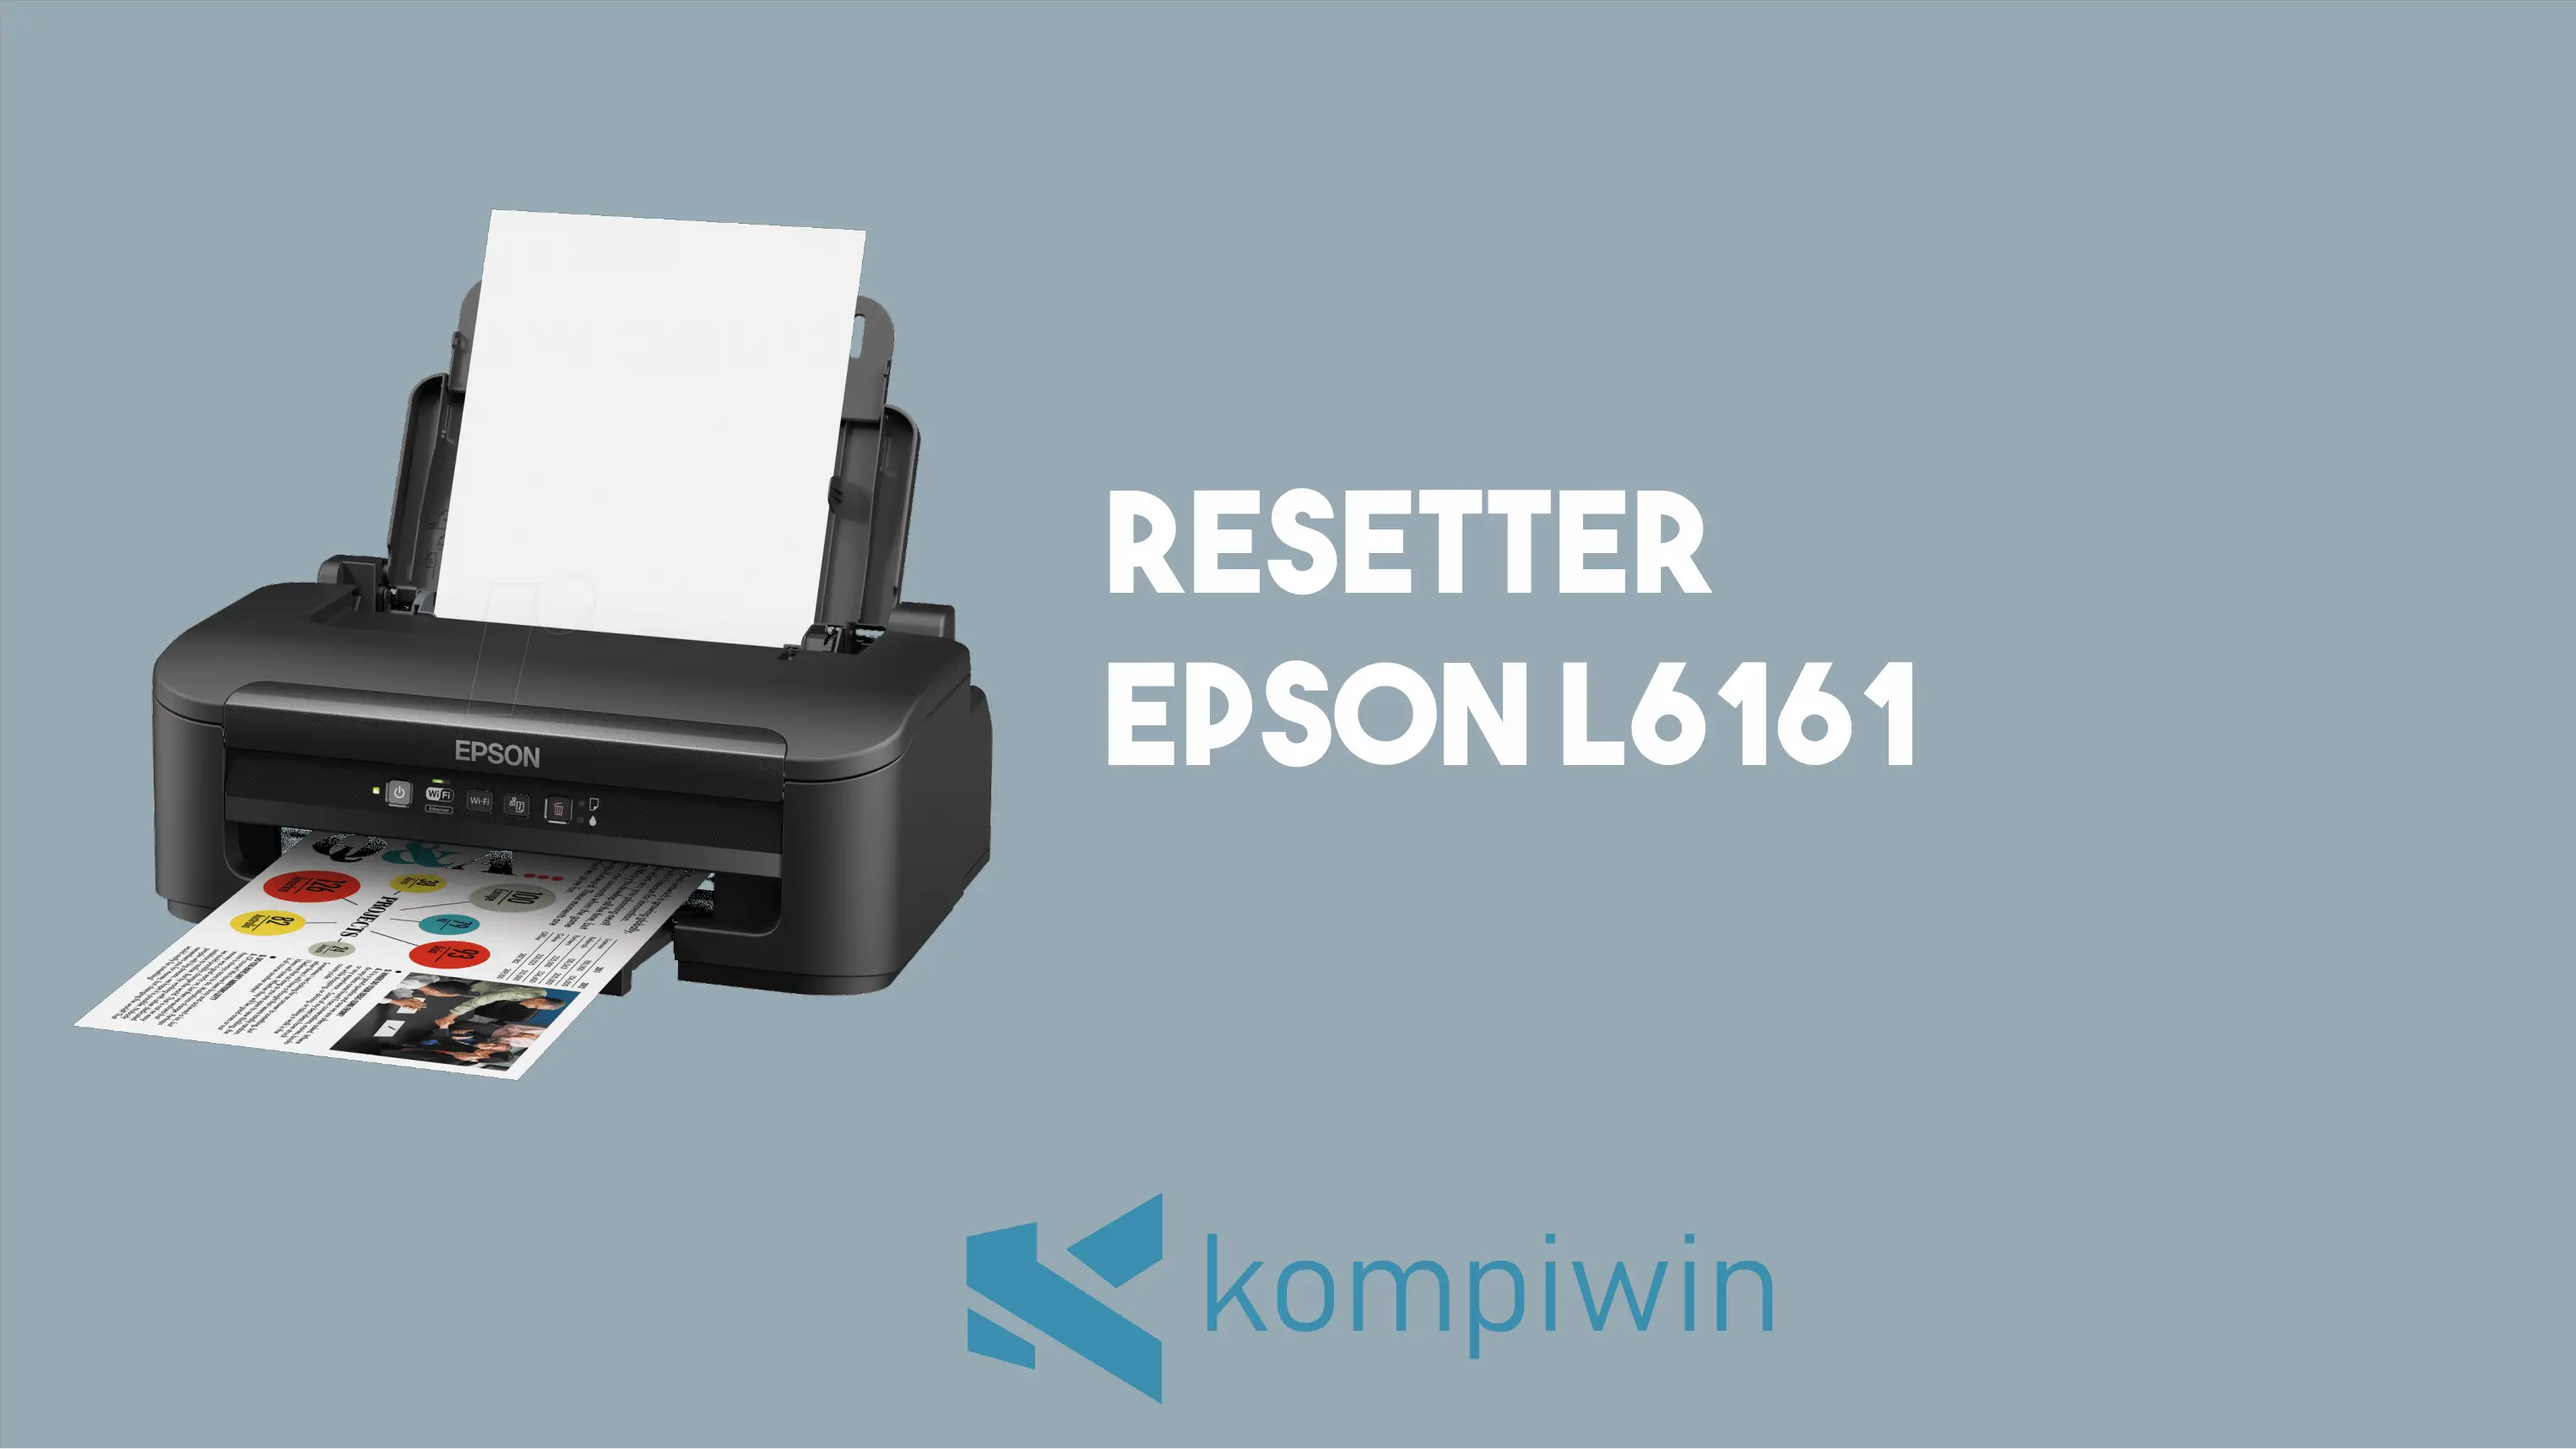 Resetter Epson L6161